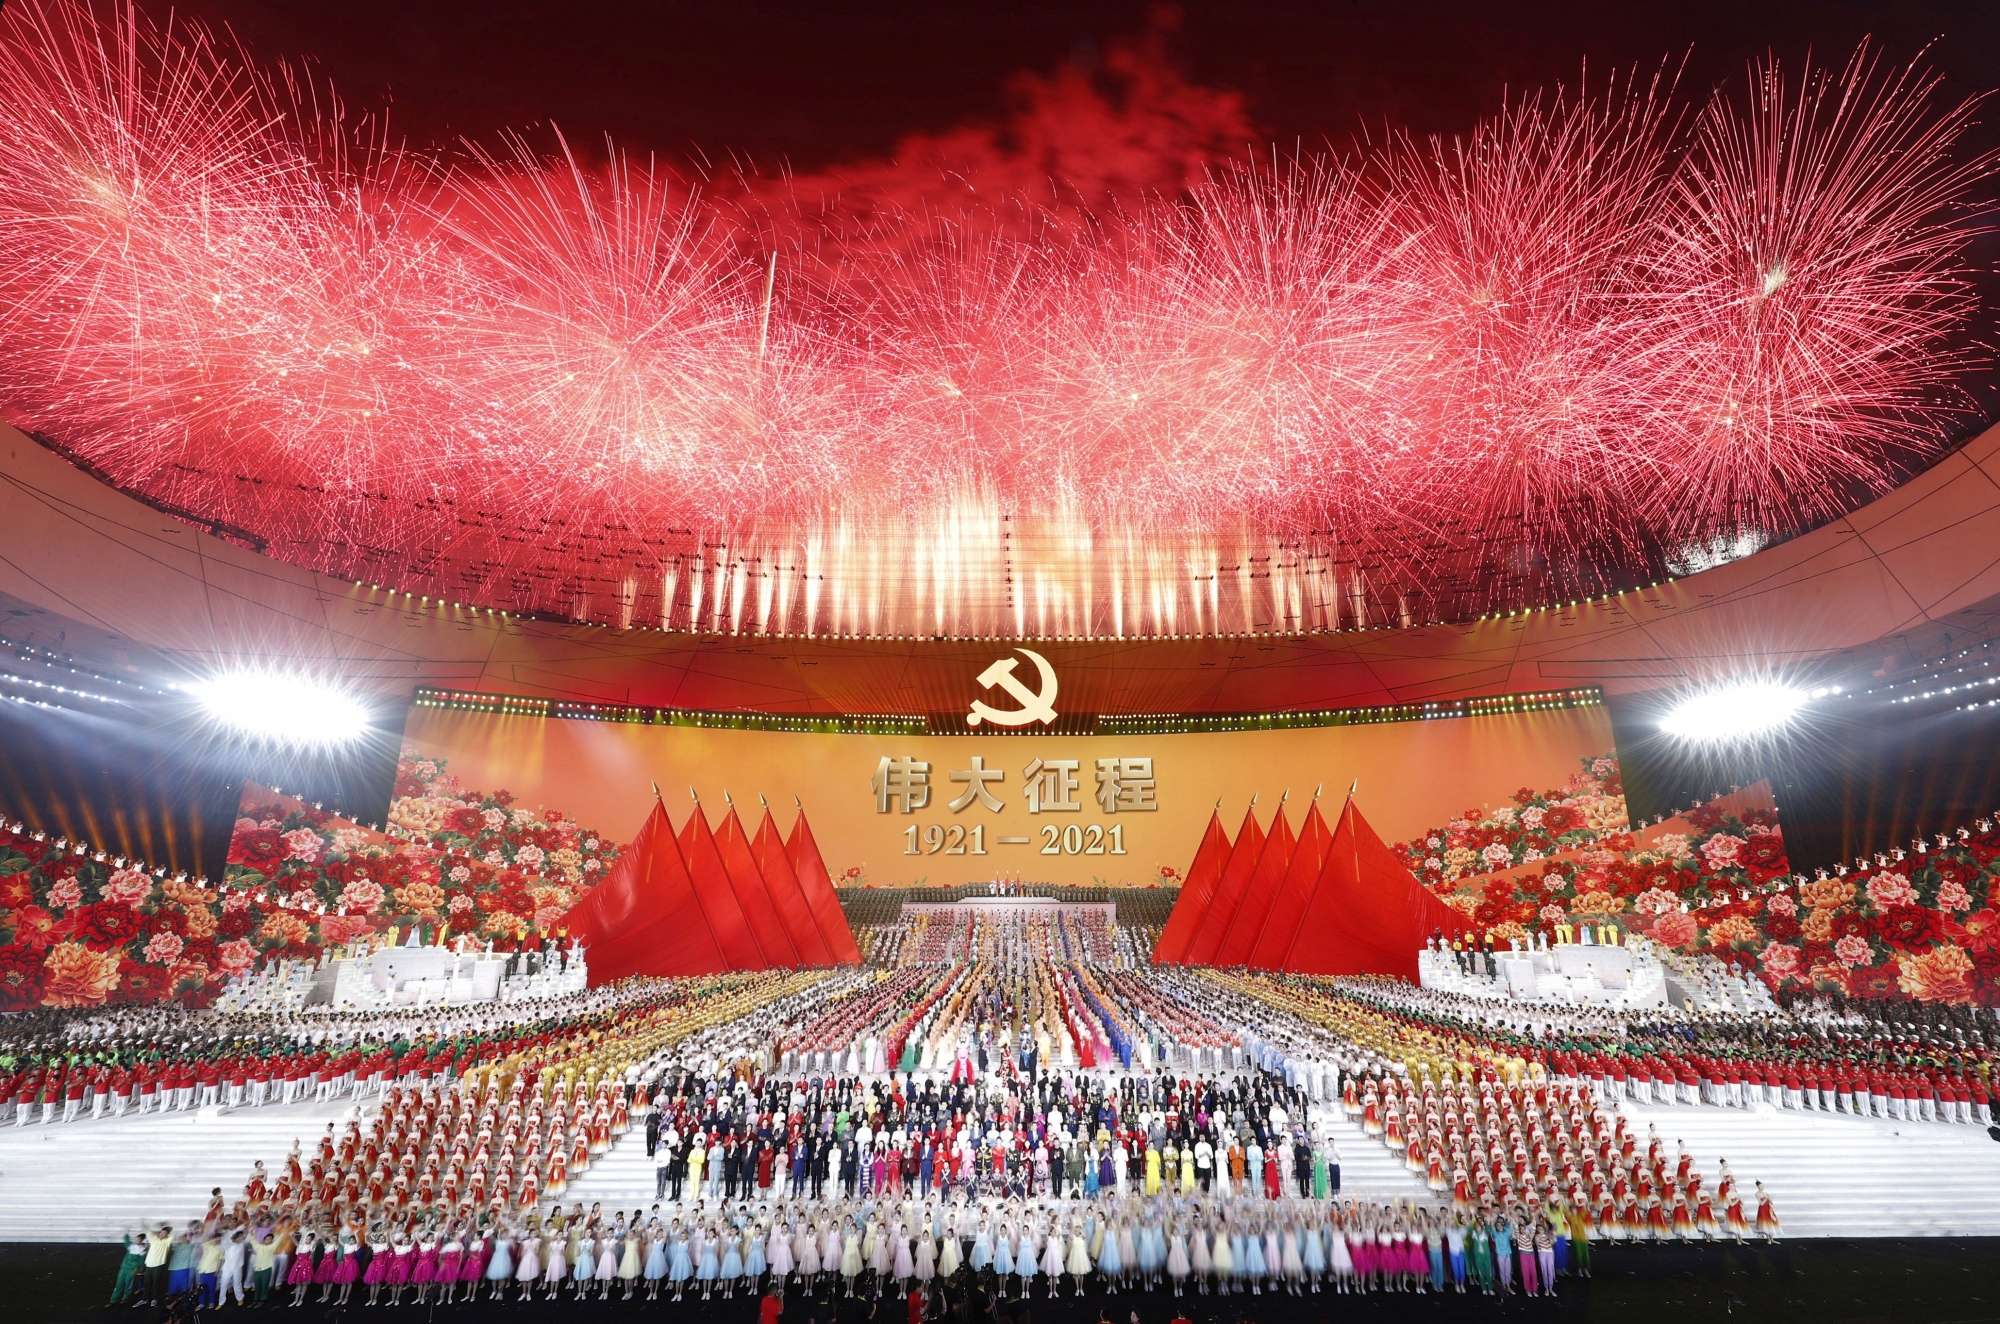 Des feux d’artifice tirés au-dessus du stade national lundi à Pékin, lors d’une performance artistique organisée pour célébrer le 100e anniversaire de la fondation du PCC.